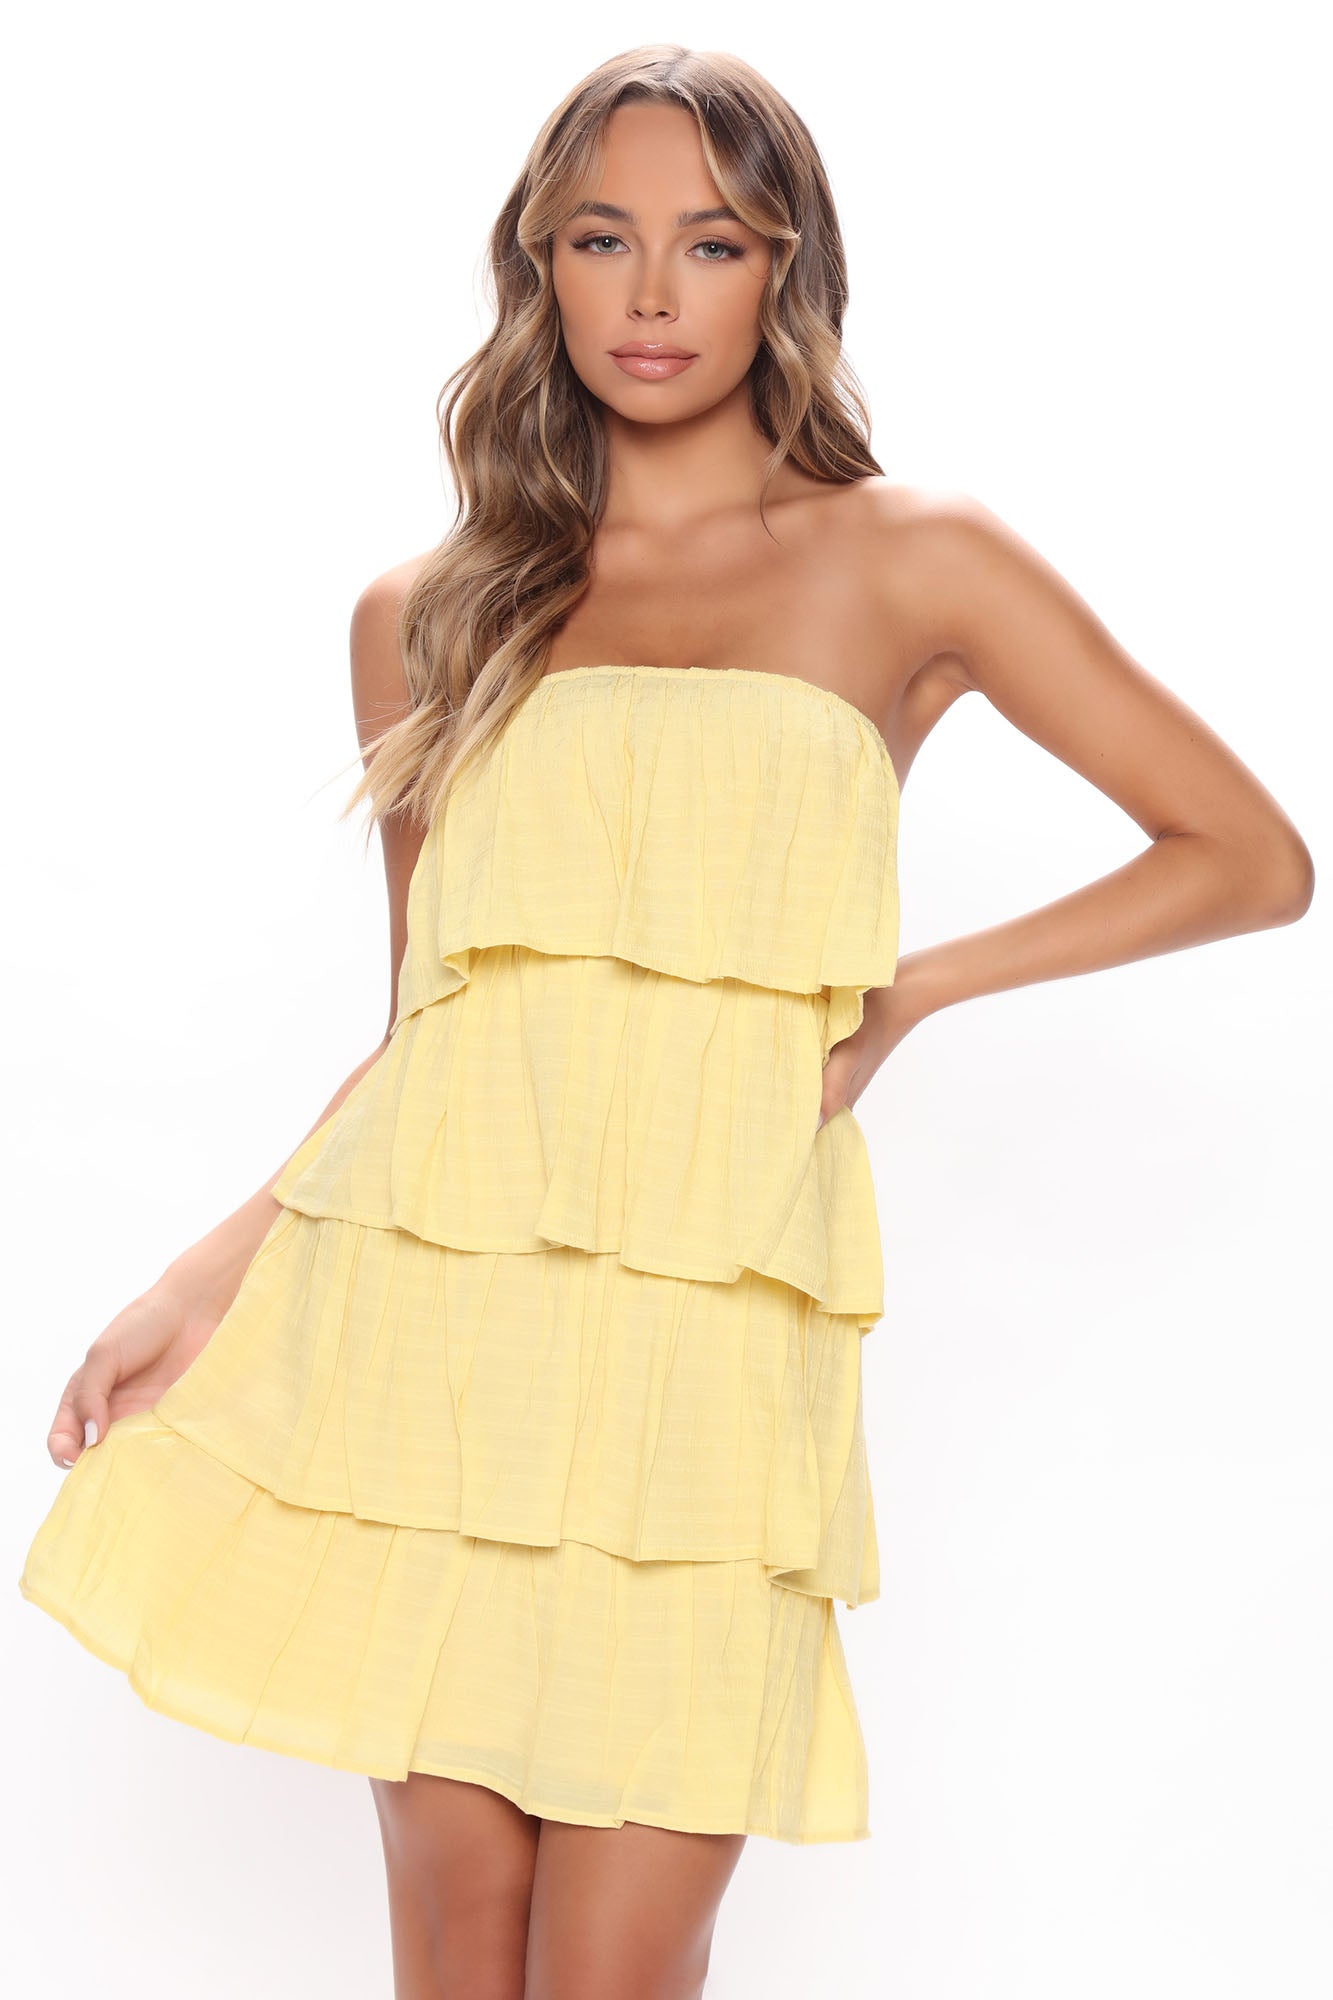 Ruffle It Up Mini Dress - Yellow